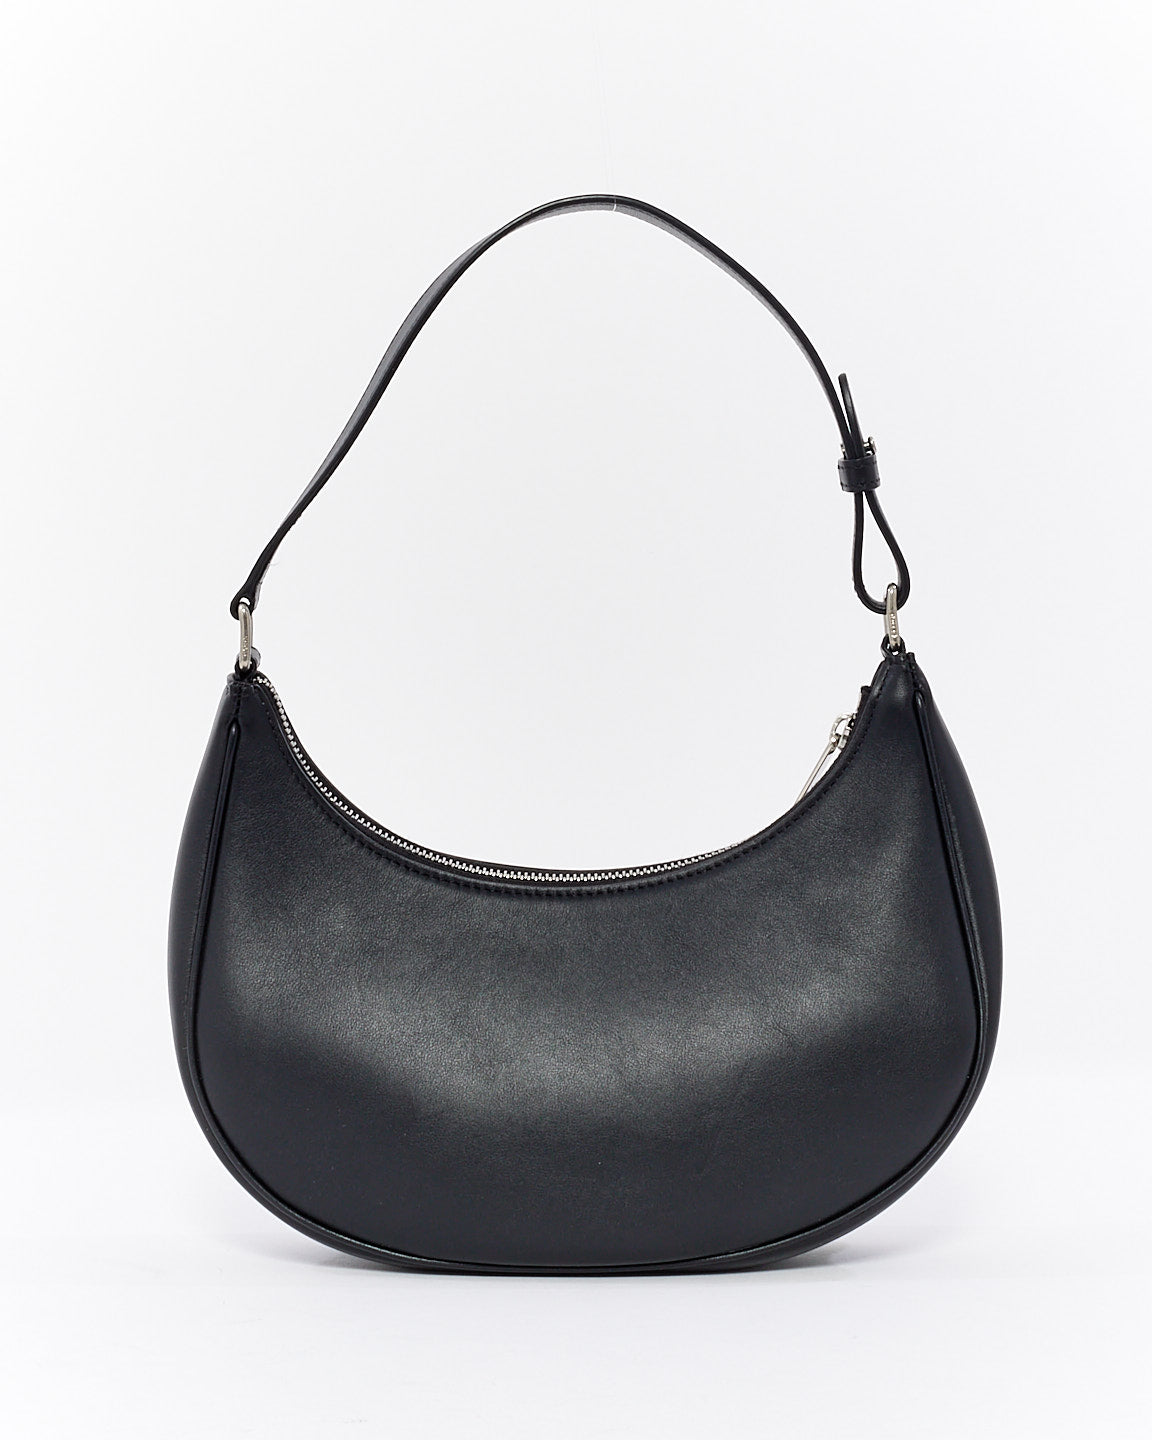 Celine Black Smooth Leather Logo Ava Bag